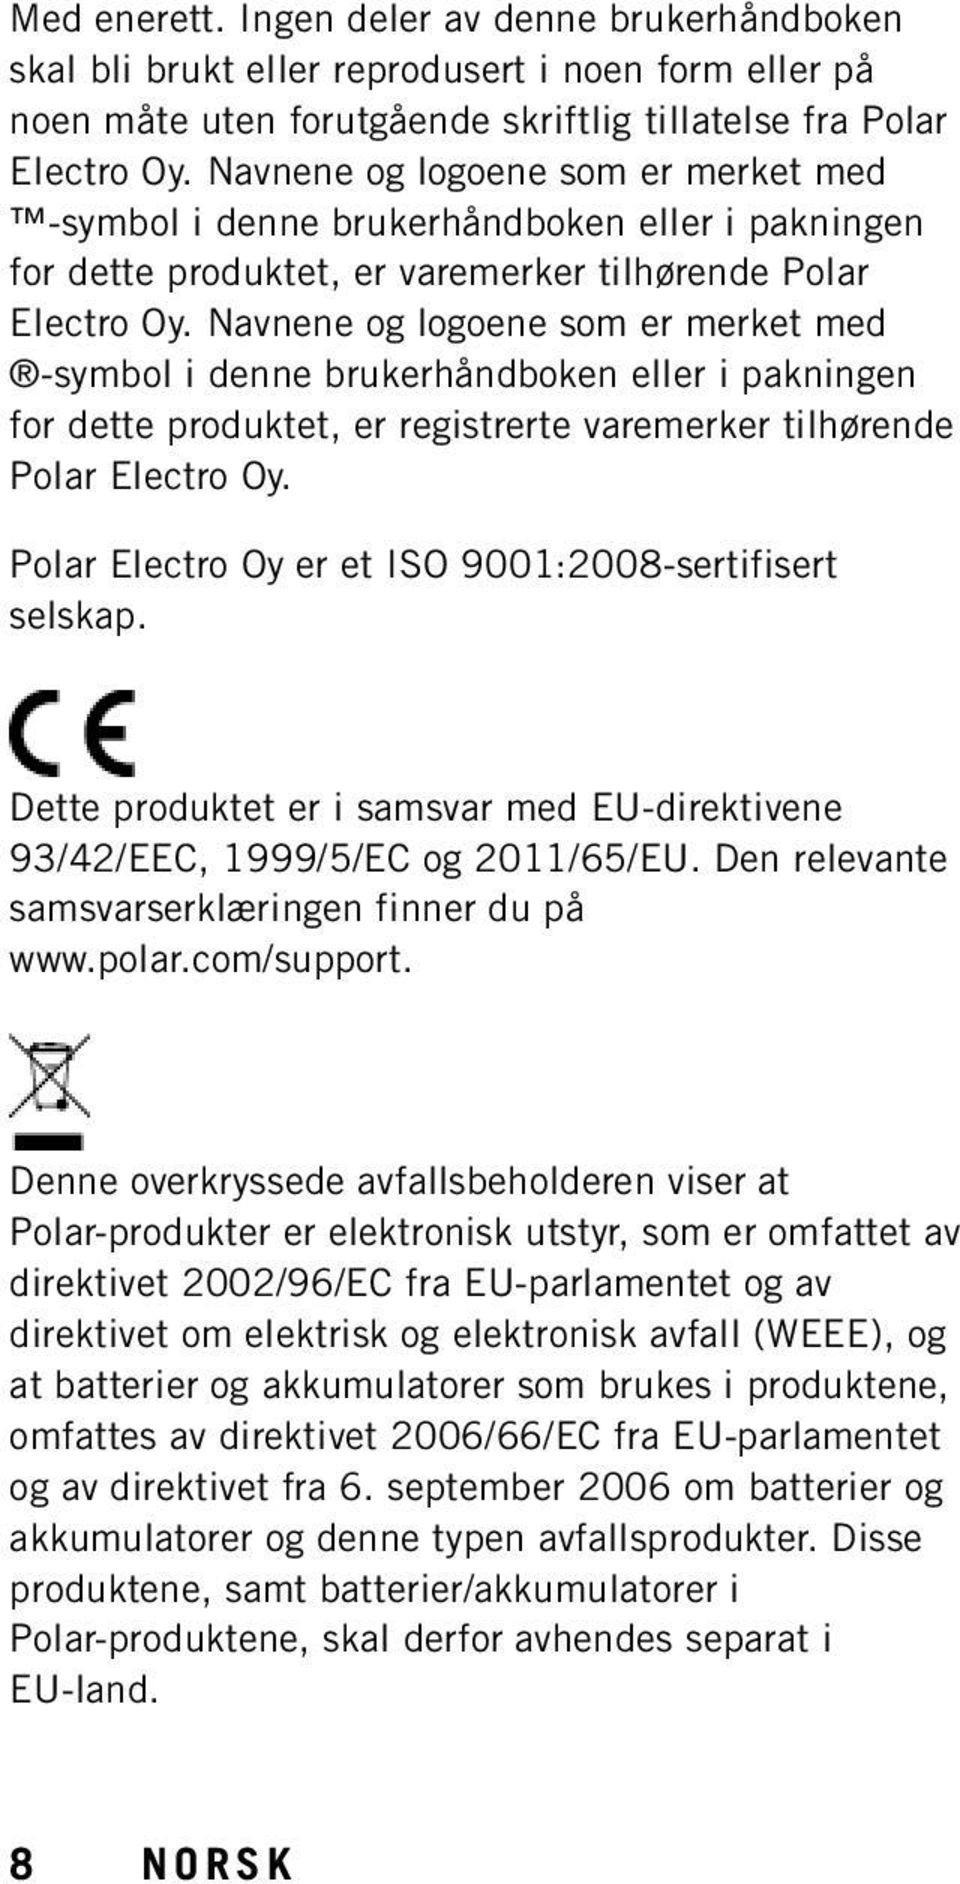 Navnene og logoene som er merket med -symbol i denne brukerhåndboken eller i pakningen for dette produktet, er registrerte varemerker tilhørende Polar Electro Oy.